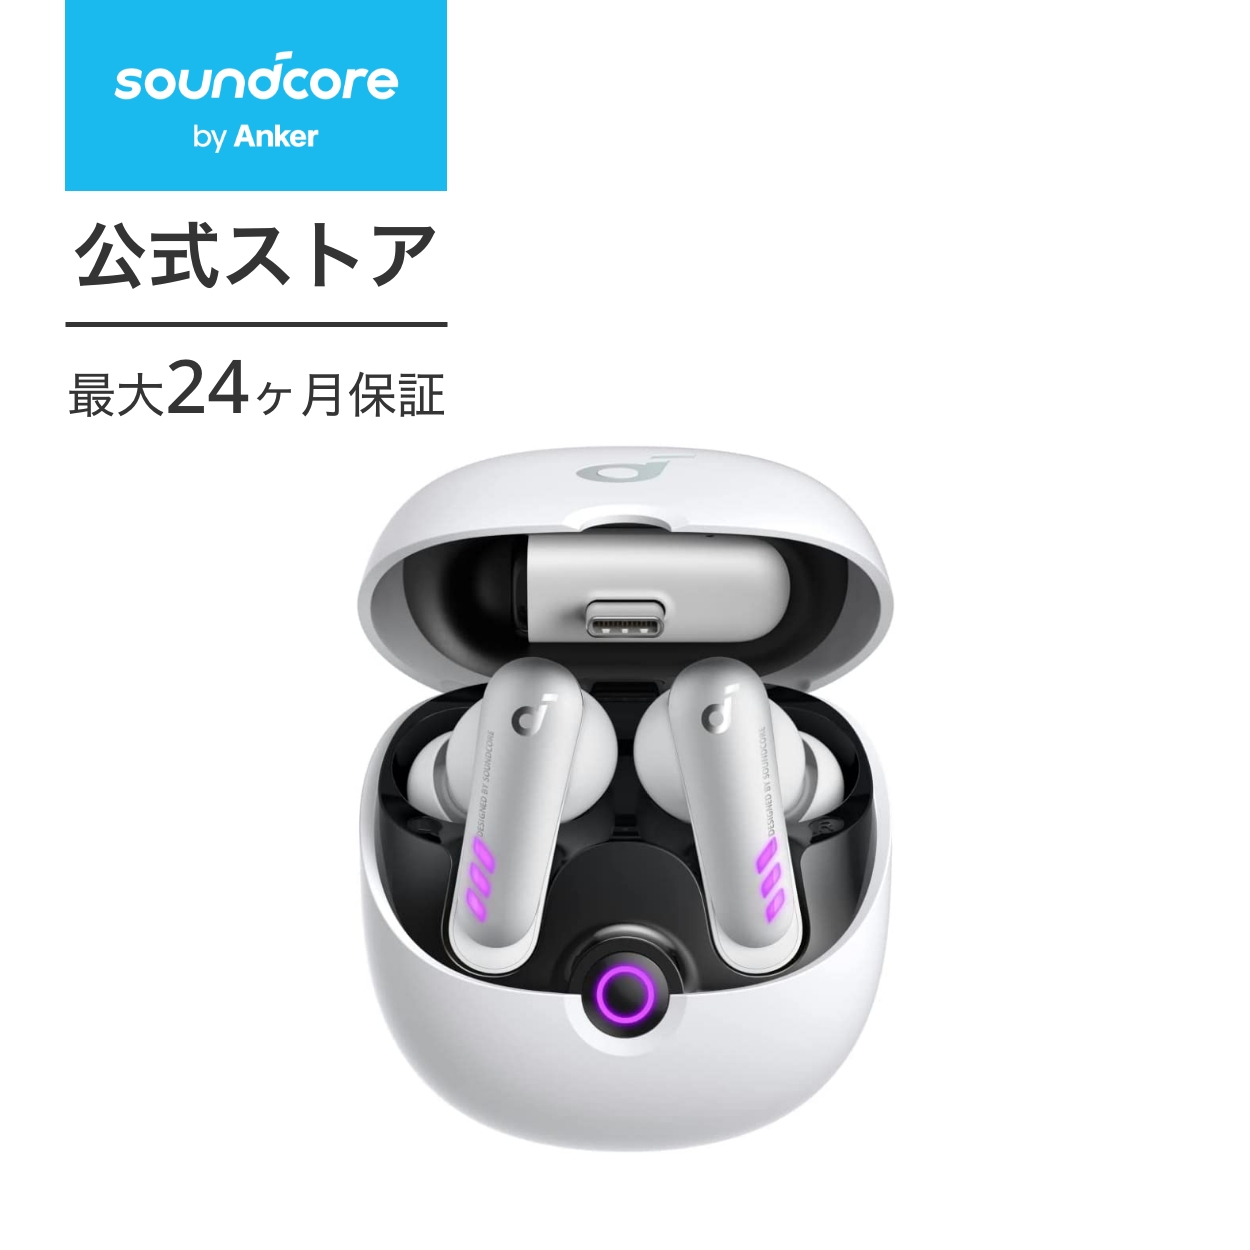 【あす楽対応】Anker Soundcore VR P10 (完全ワイヤレスイヤホン) 【Made for Meta認定 / ゲーミングイヤホン/ 30ms超低遅延 / 2台同時接続 / 通話可能 /